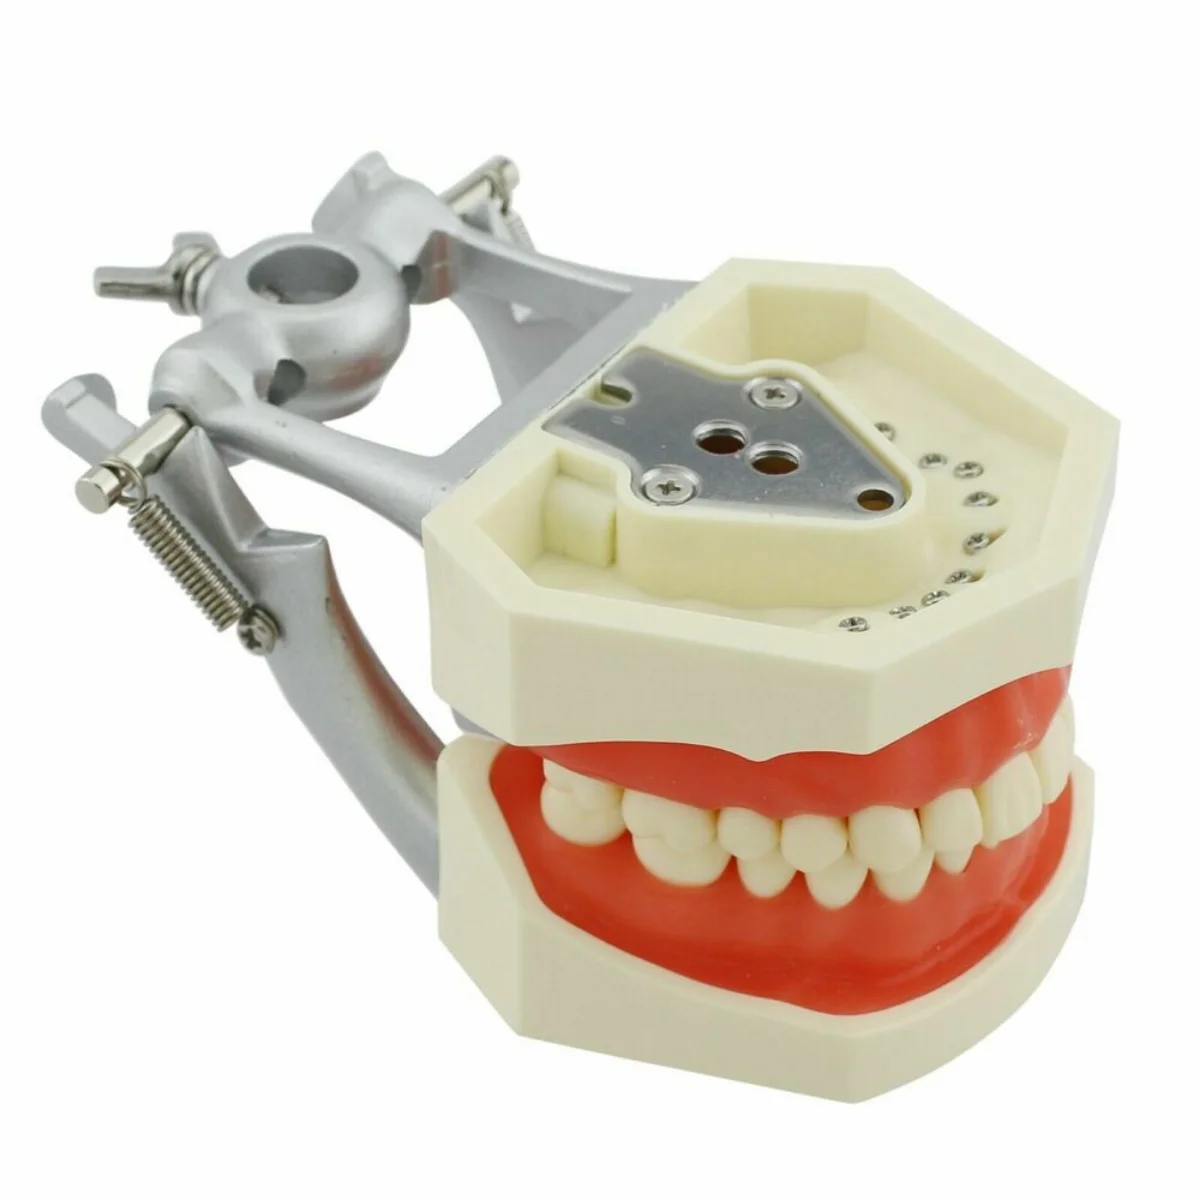 Зубной монтажный столб-для kilгор, Колумбия, Nissin и т. д. типонты/дентоформеры